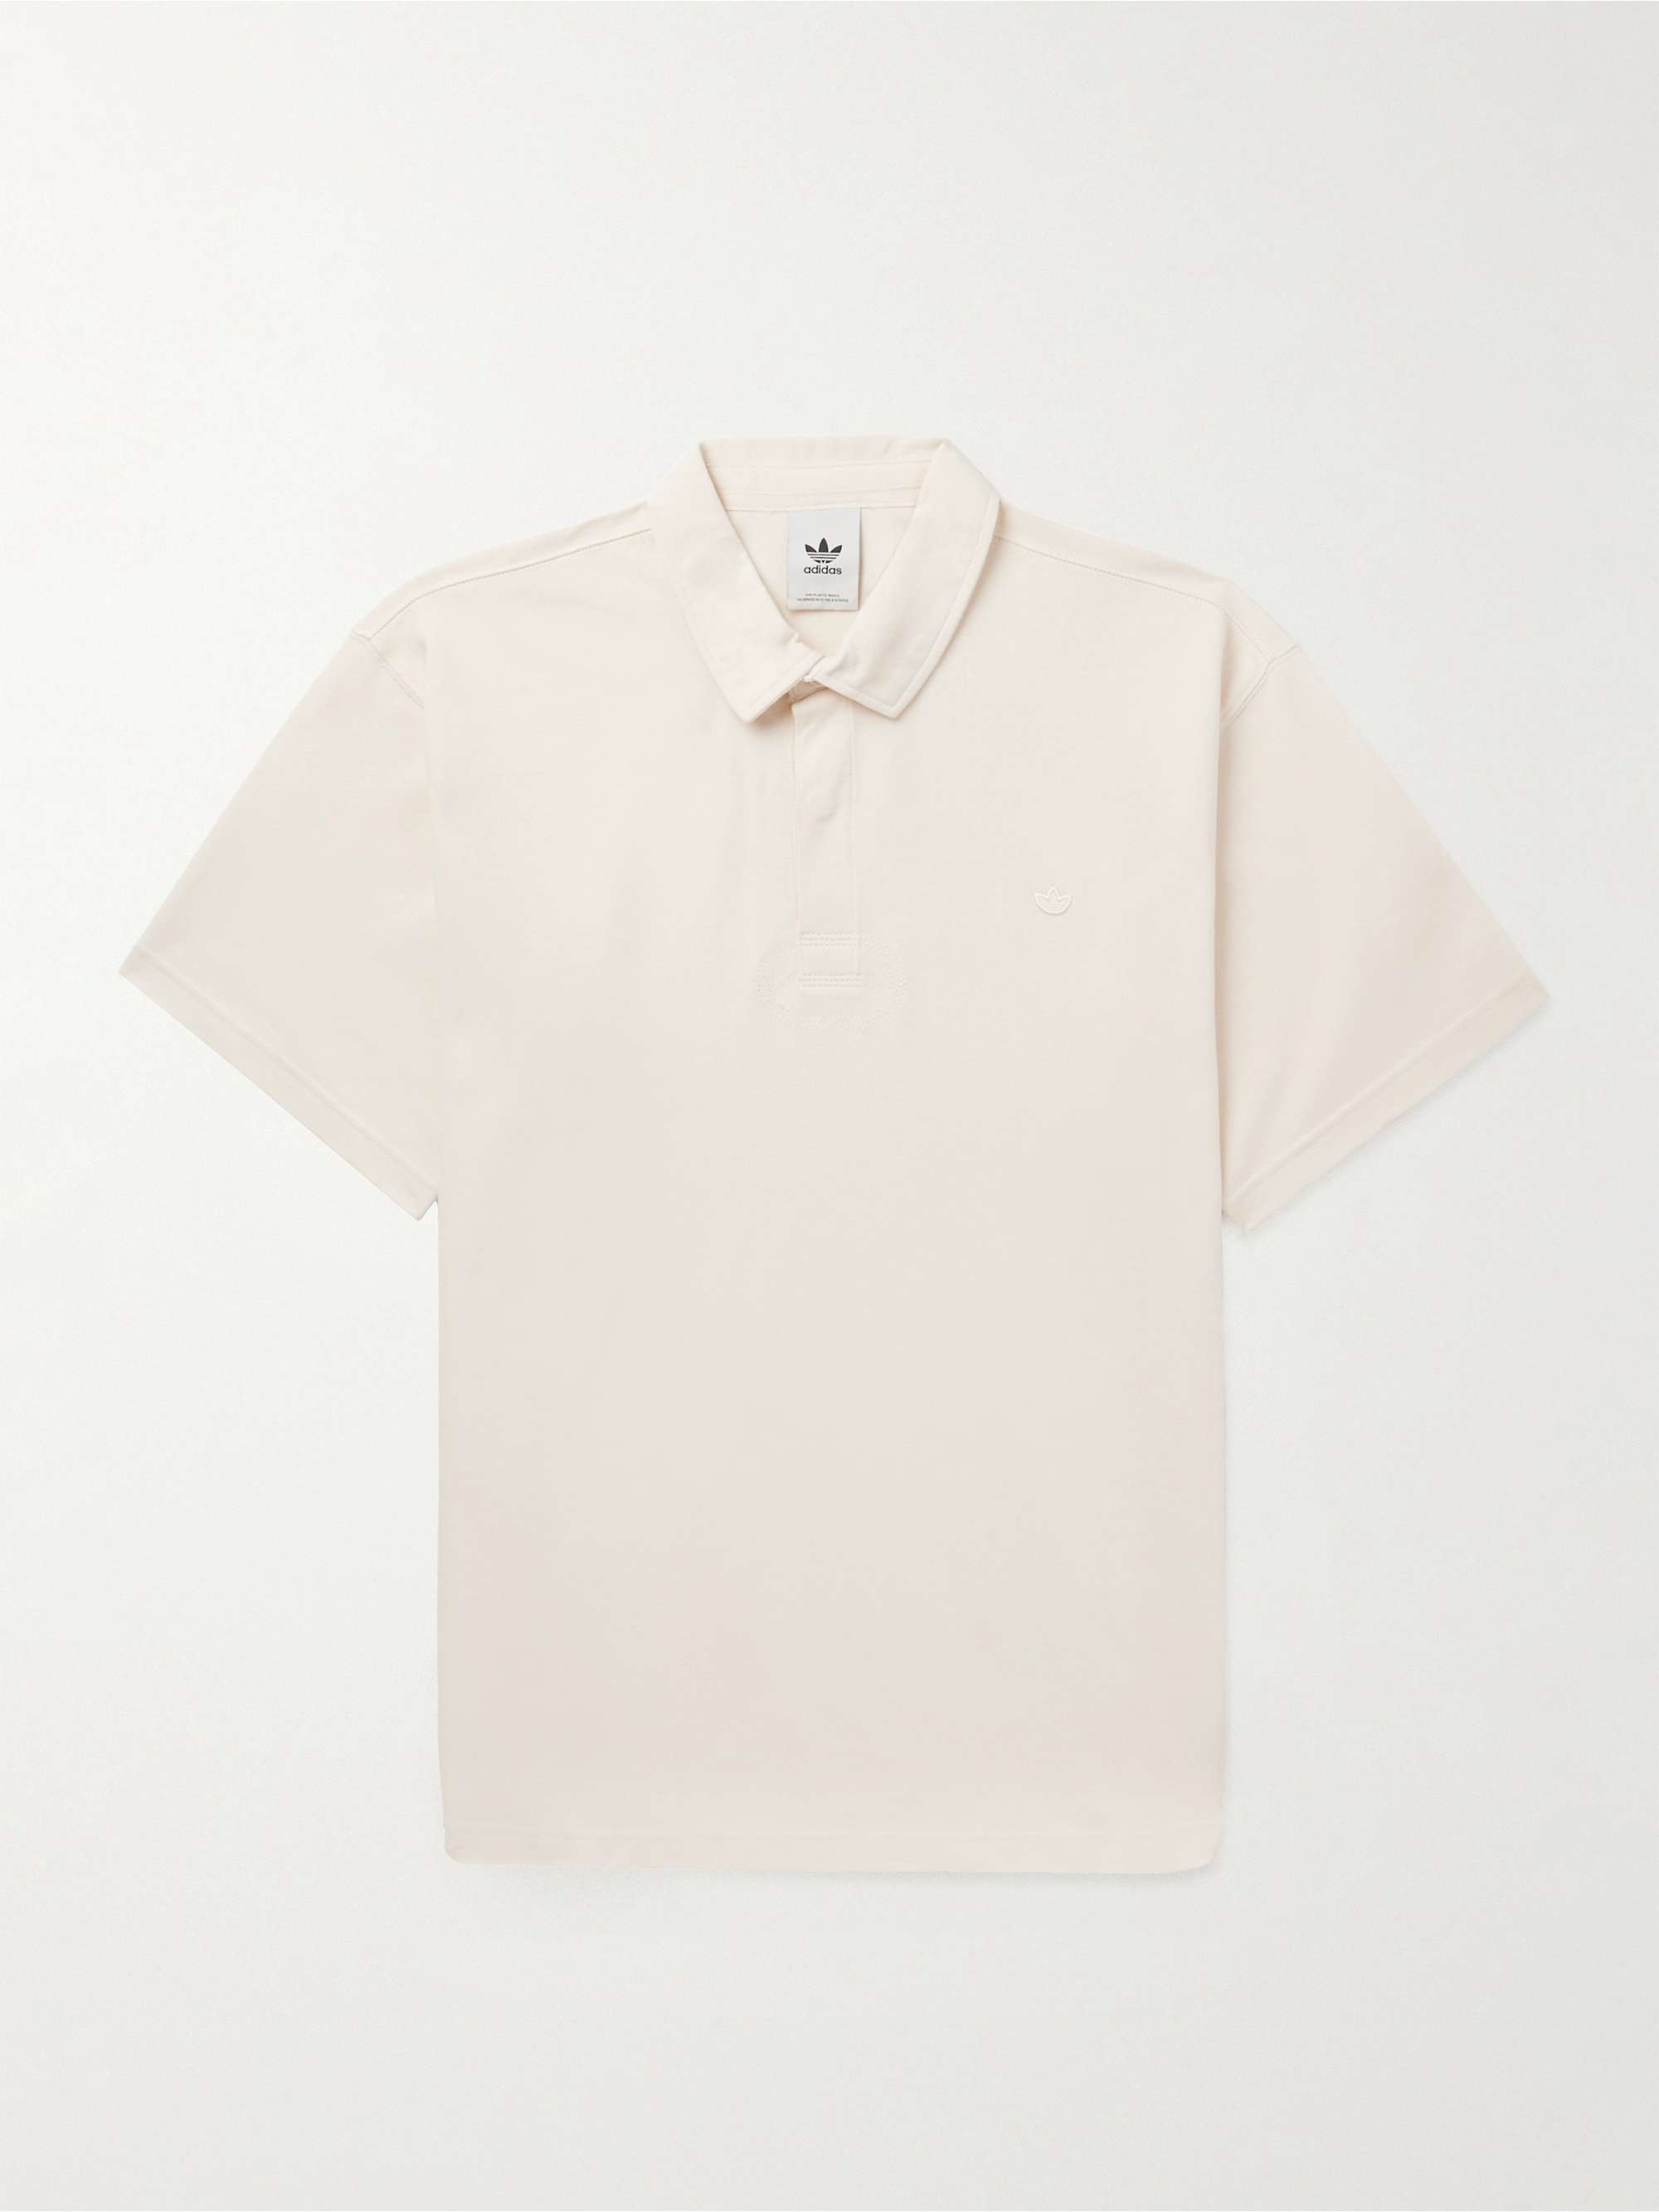 ADIDAS ORIGINALS Premium Essentials Cotton-Piqué Polo Shirt | MR PORTER